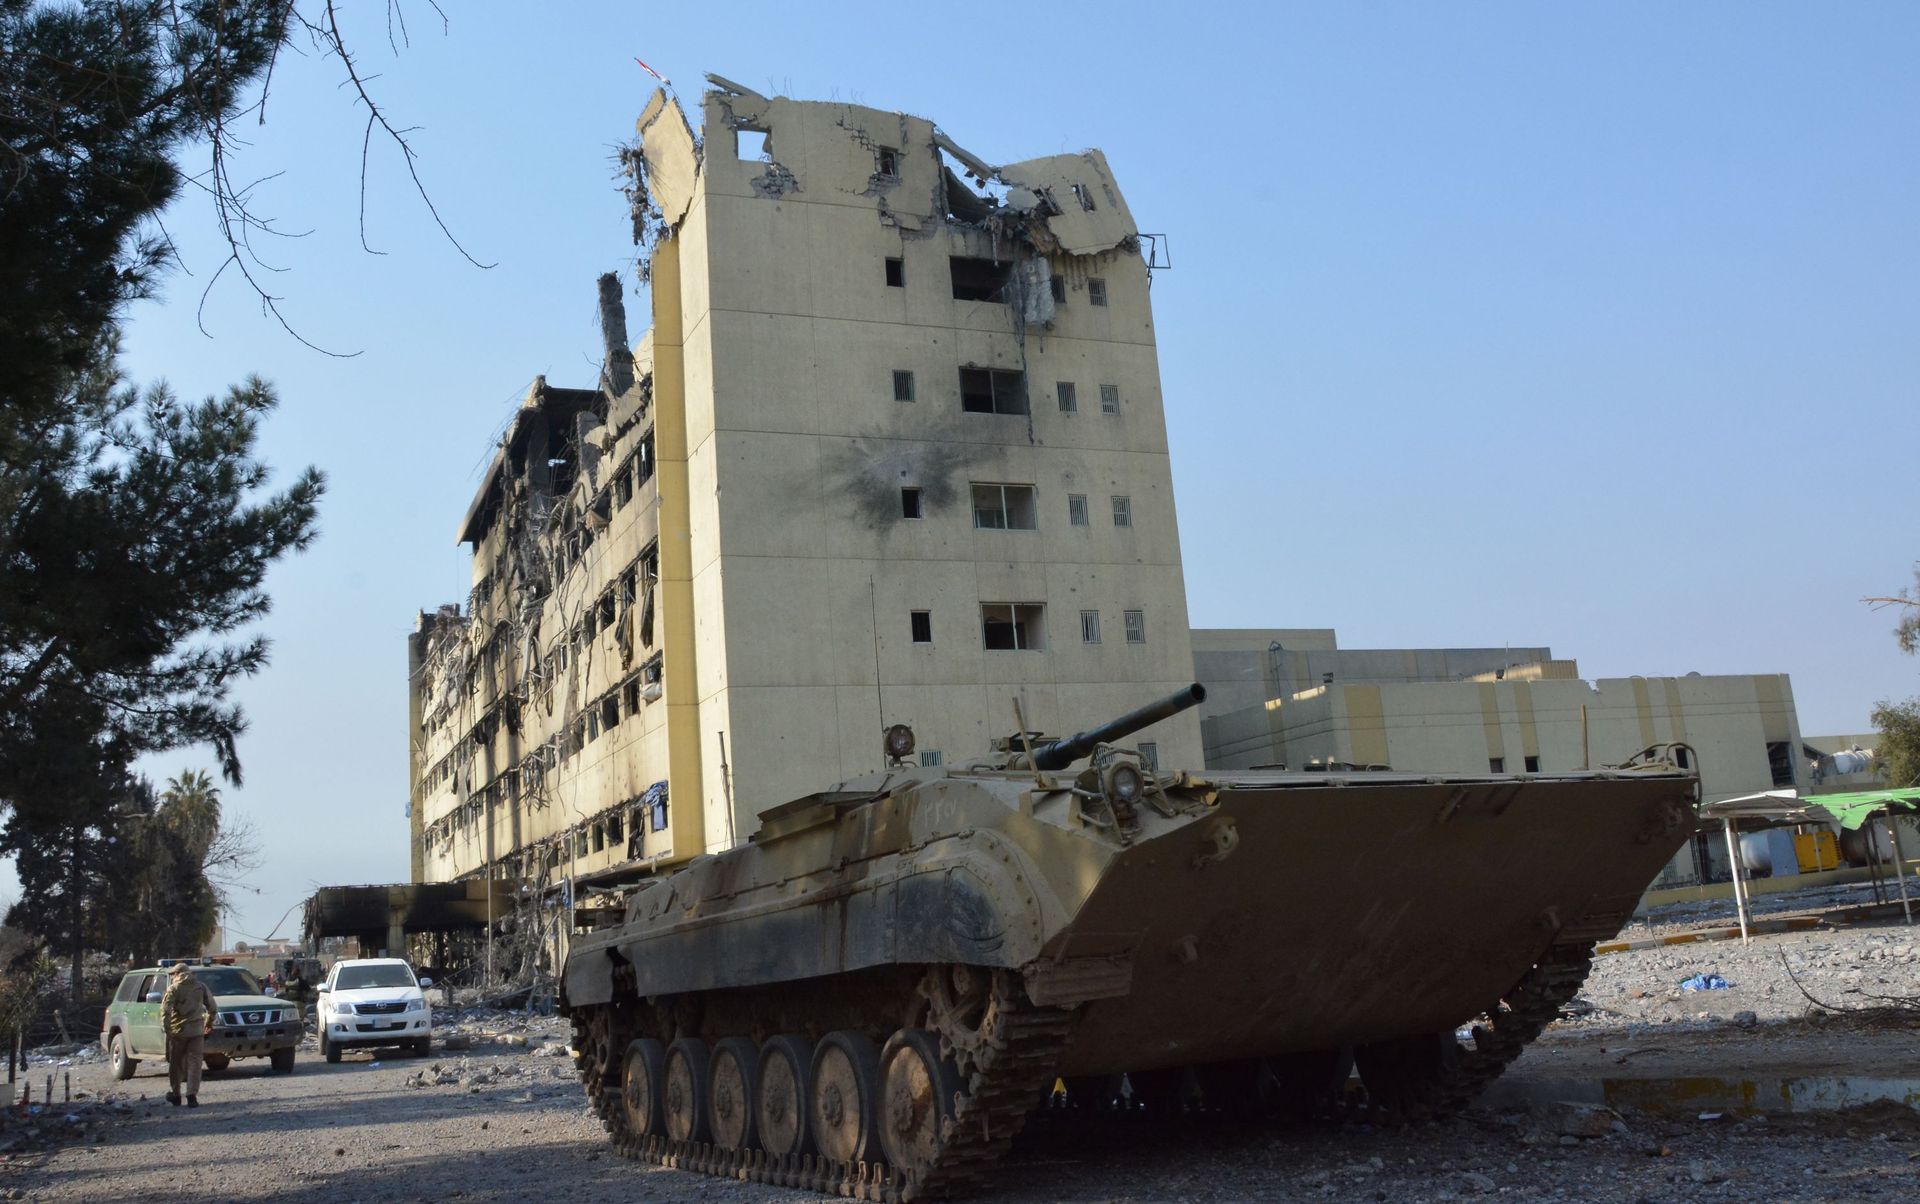 Tank des forces irakiennes près de l'hôpital Al-Salam, repris au groupe terroriste état islamique, le 09 janvier 2017 